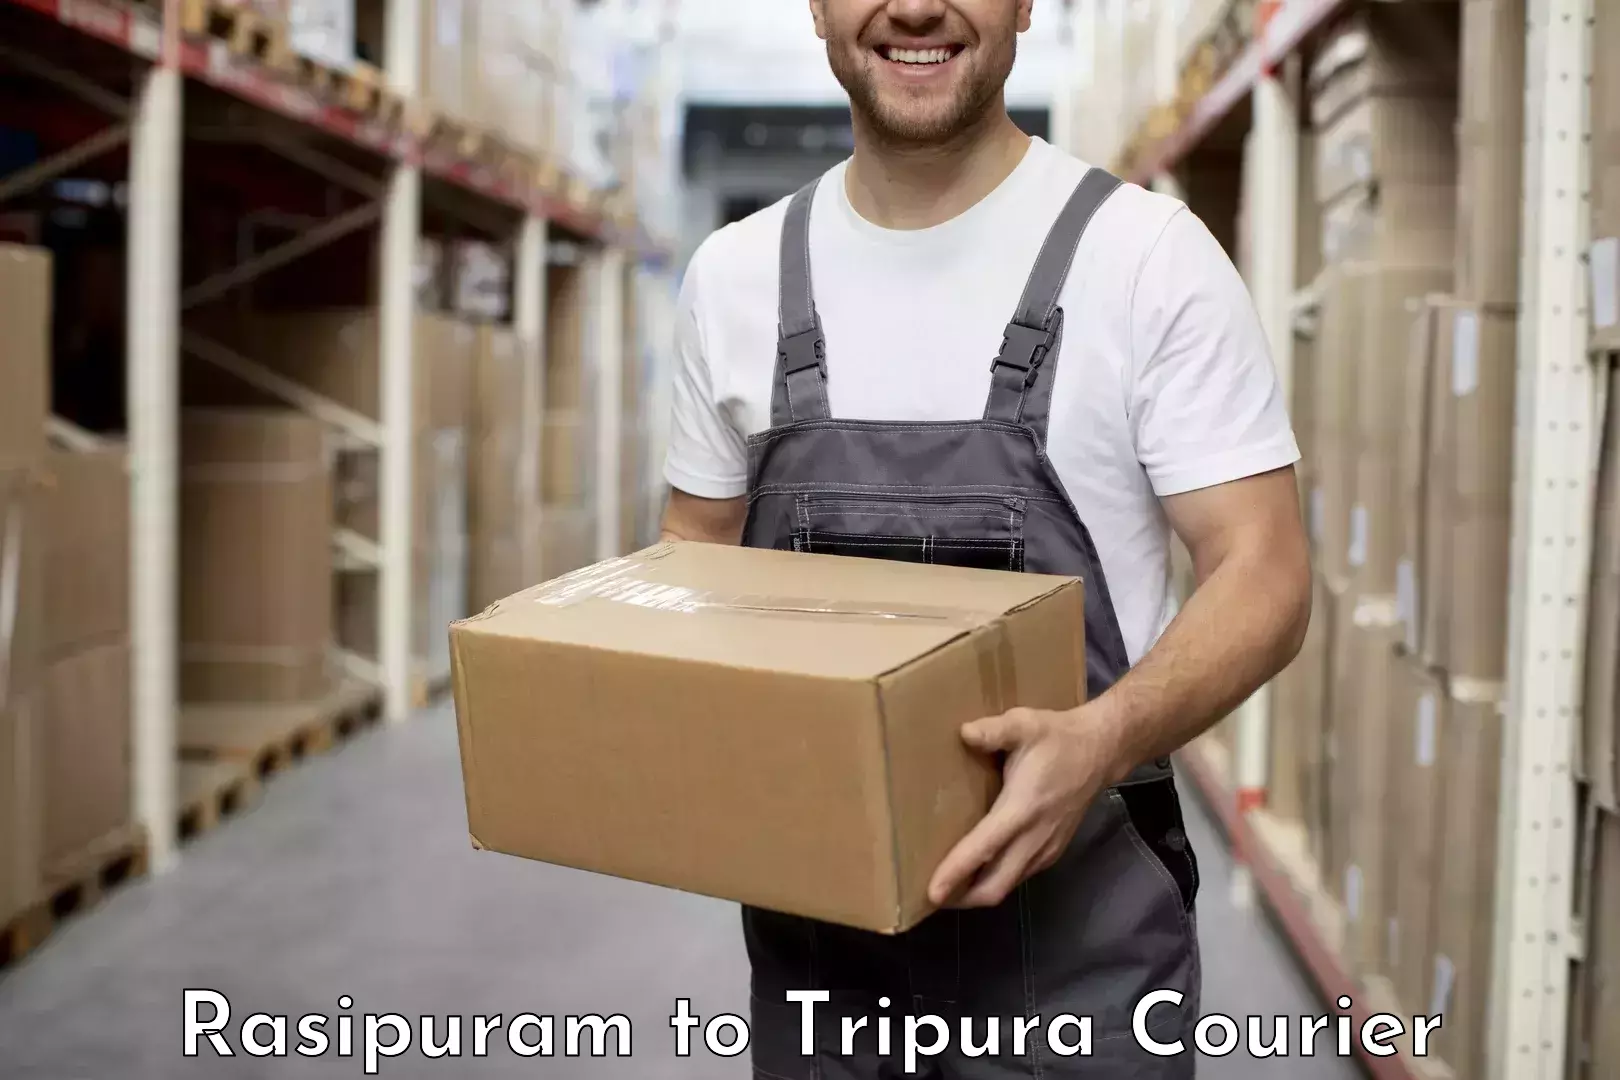 Supply chain efficiency in Rasipuram to Tripura